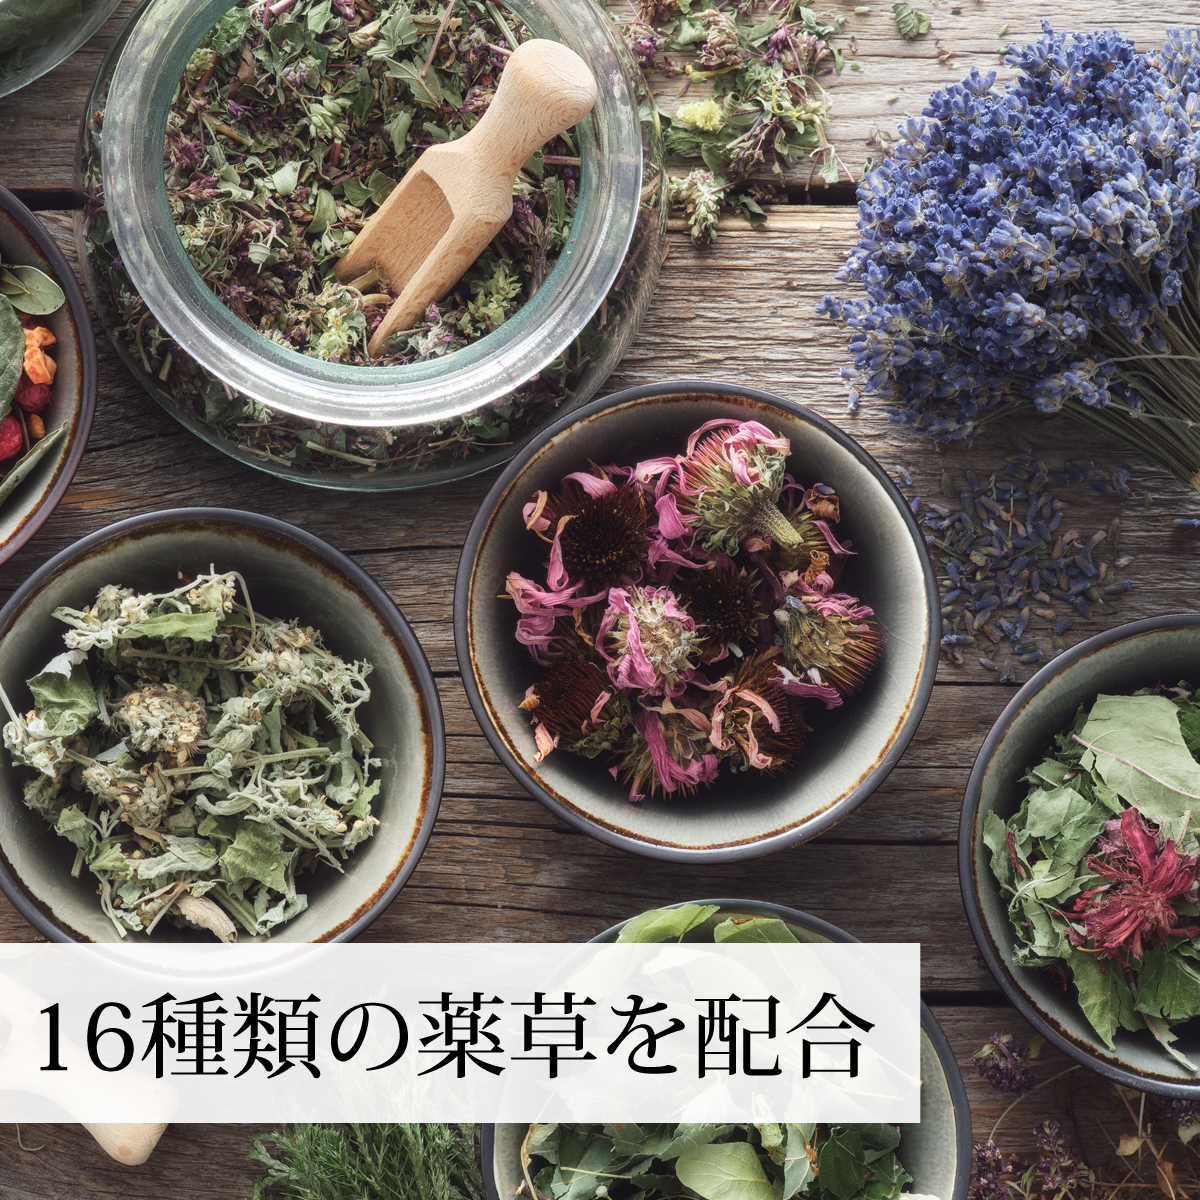 ザクロの種茶 240g×2個 ざくろ茶 ザクロ茶 リーフティー - 健康茶